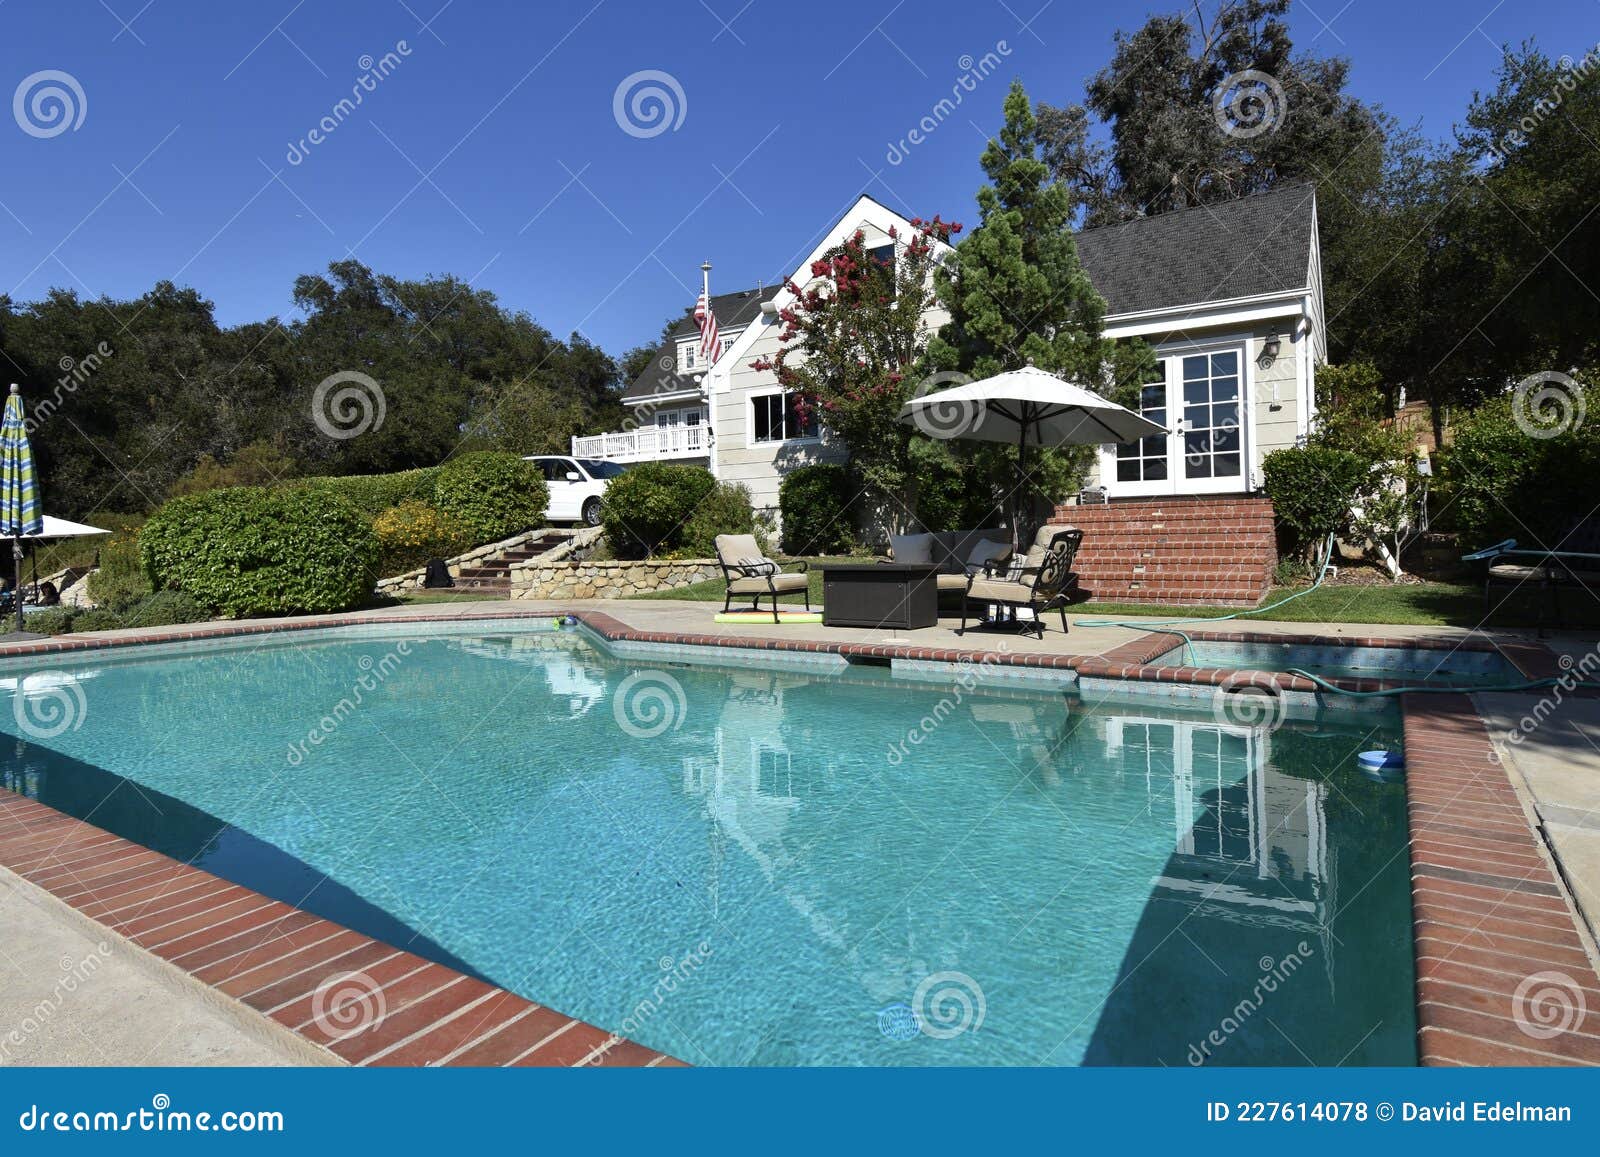 american backyard swimming pool, 2.